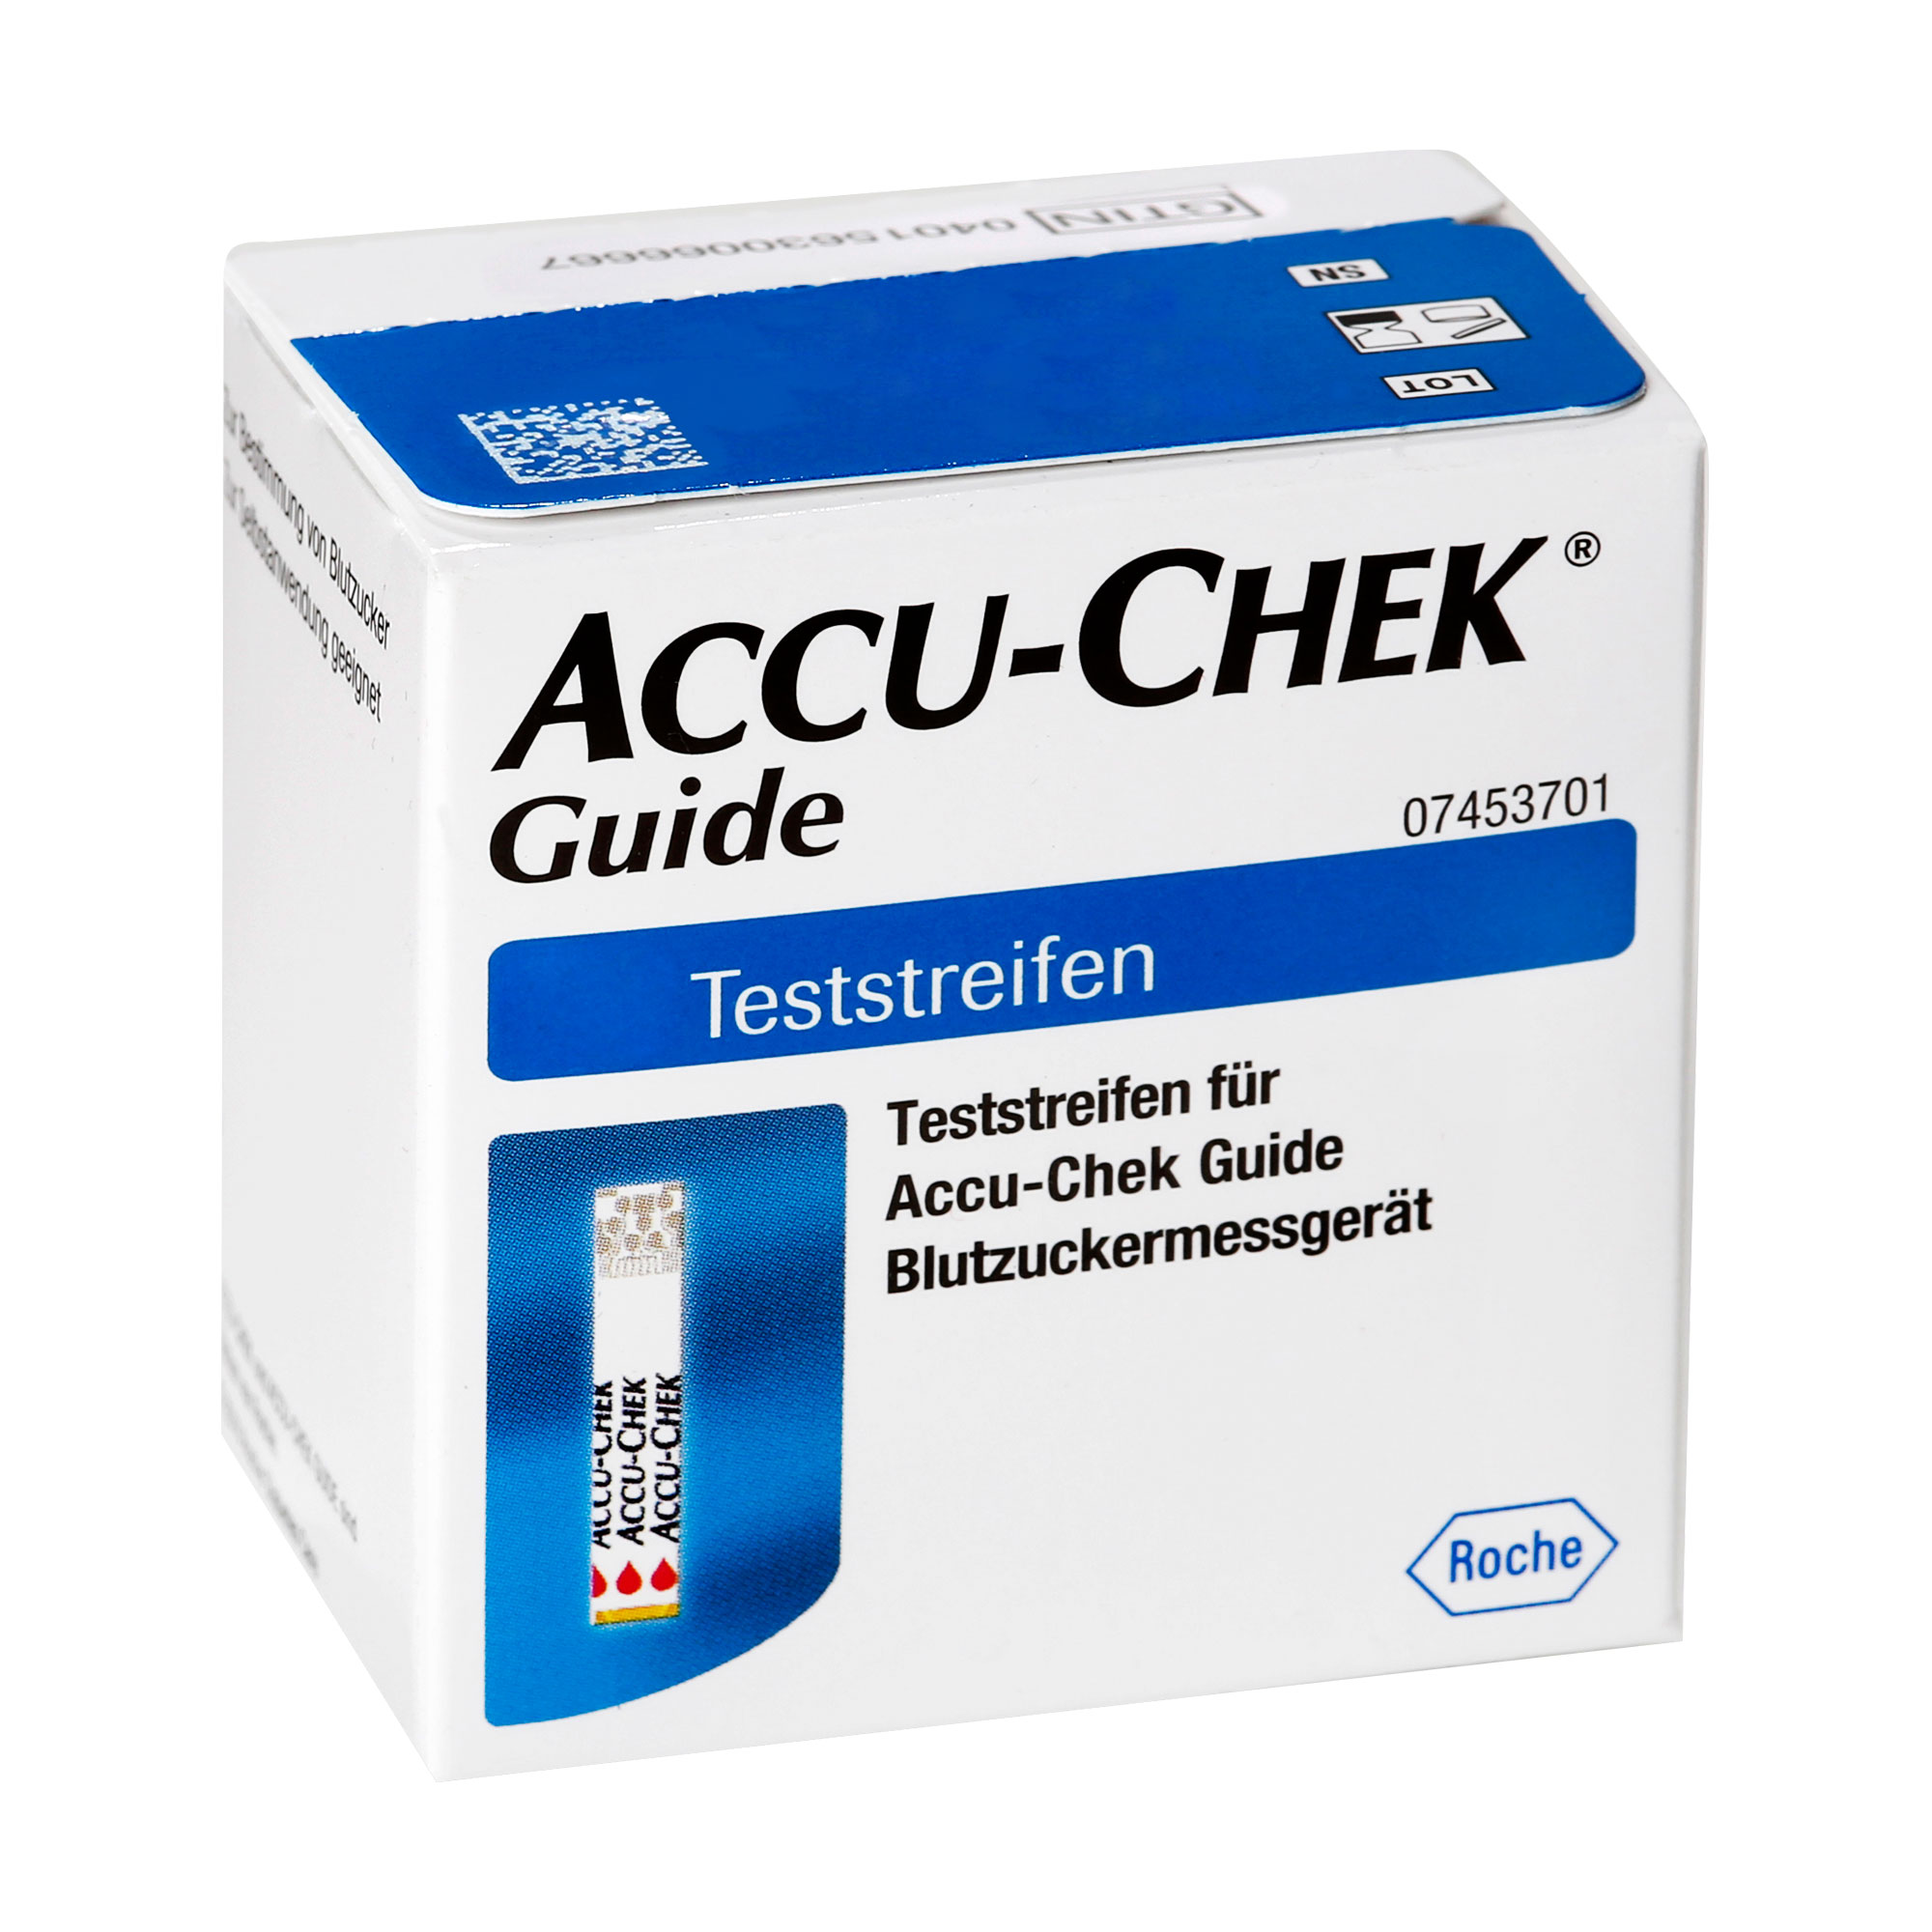 Teststreifen für Accu-Chek Guide zur Bestimmung von Blutzucker.